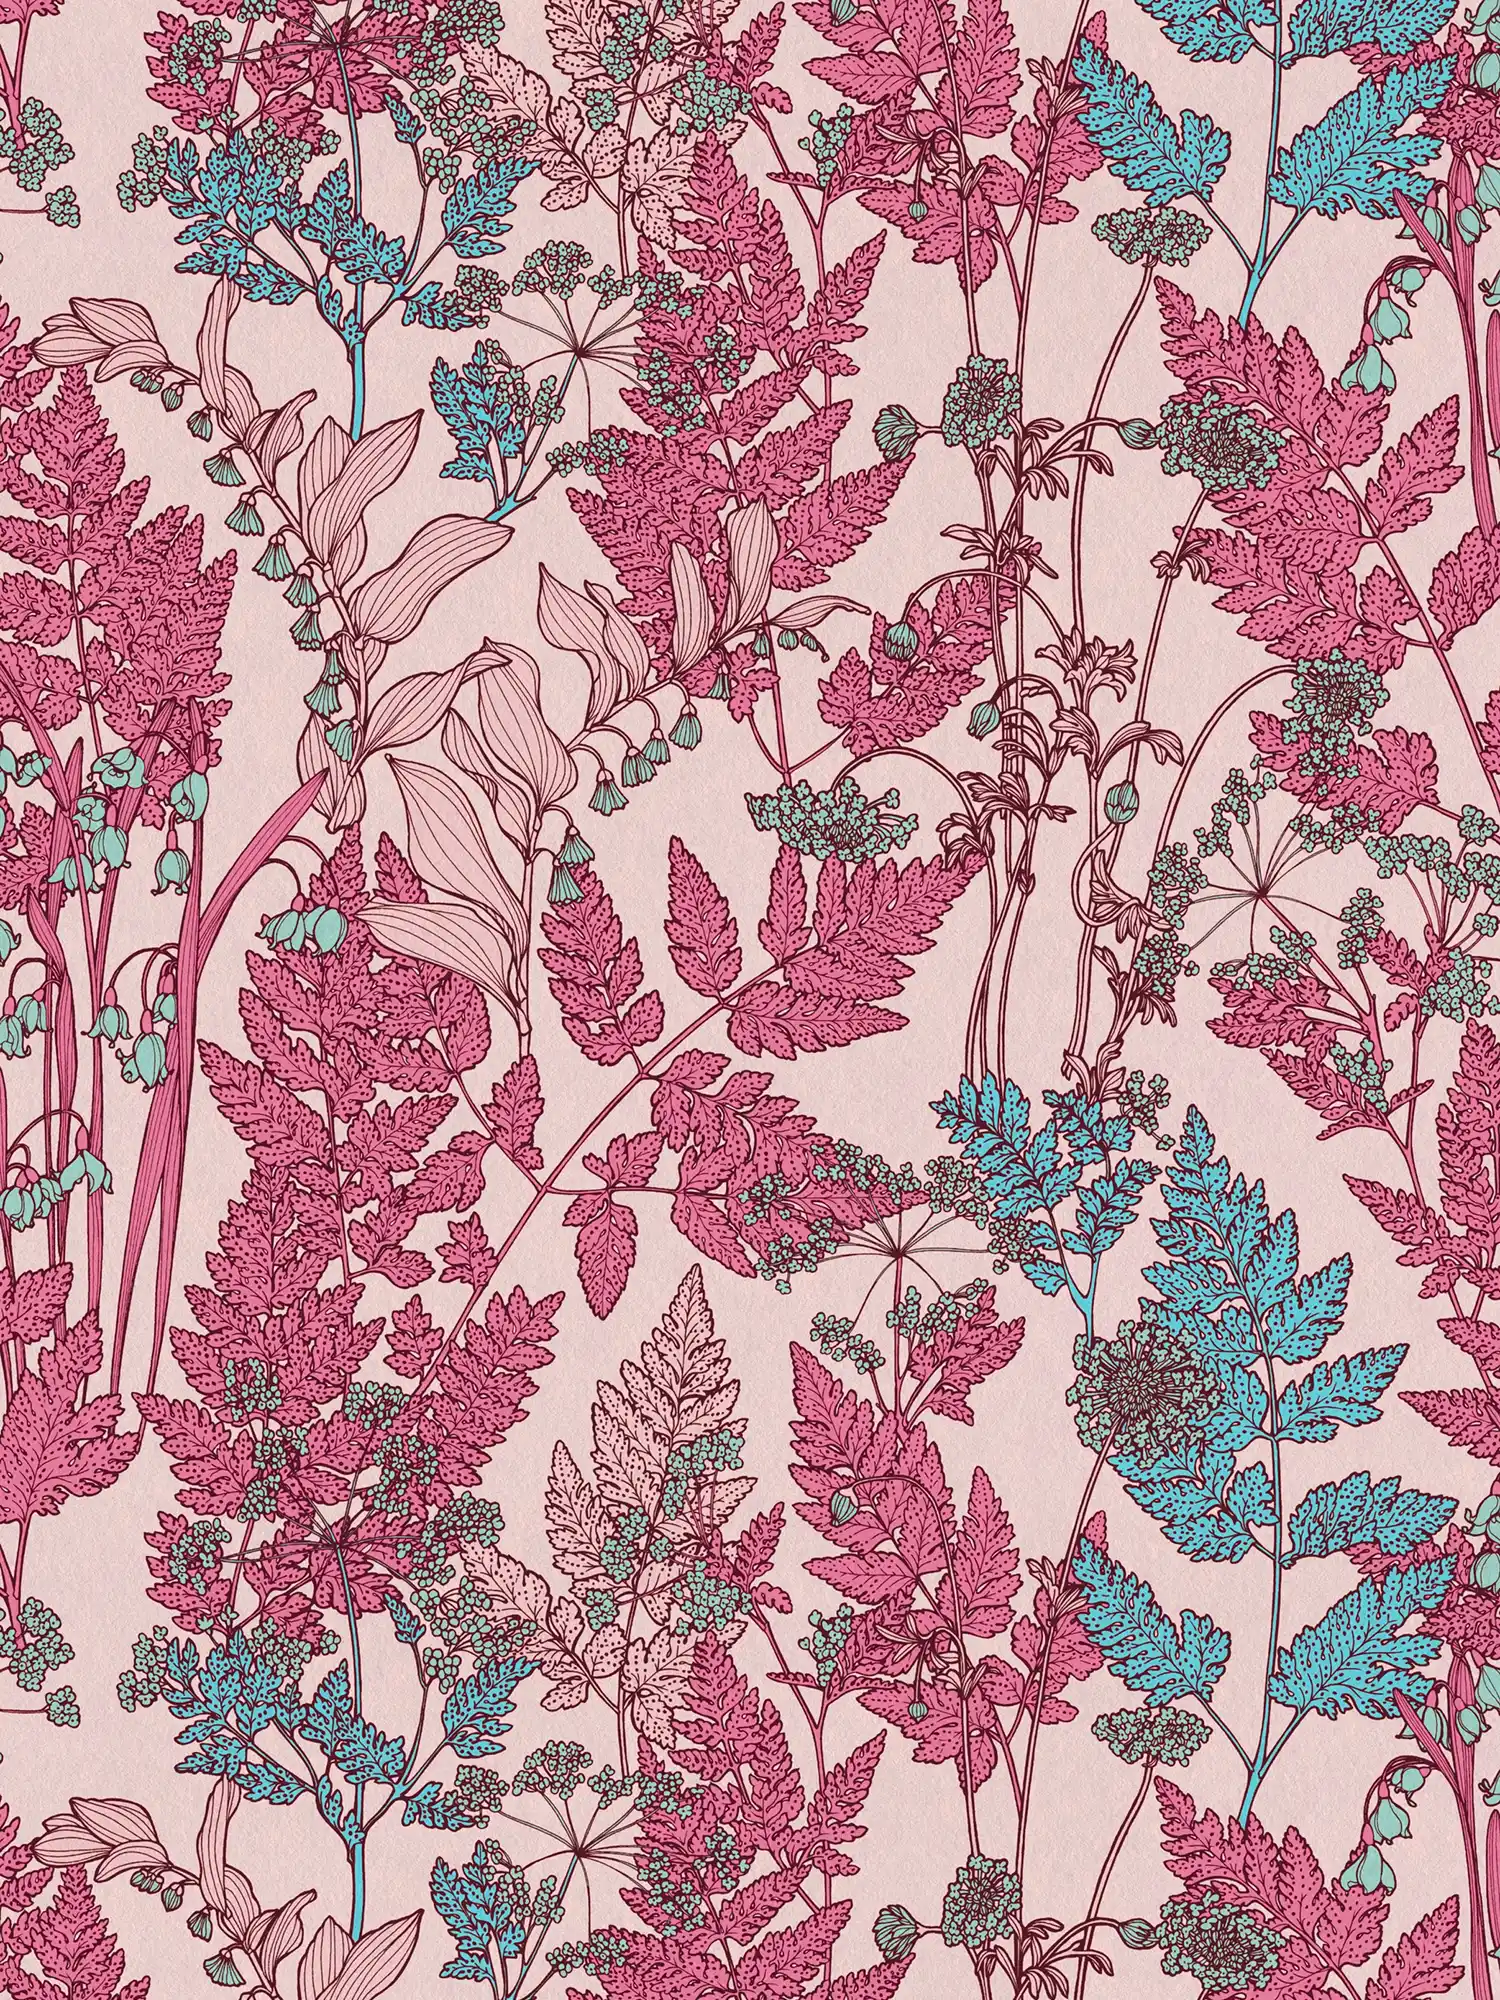             Papier peint fleuri rose avec design floral style botanique - rose, rouge, bleu
        